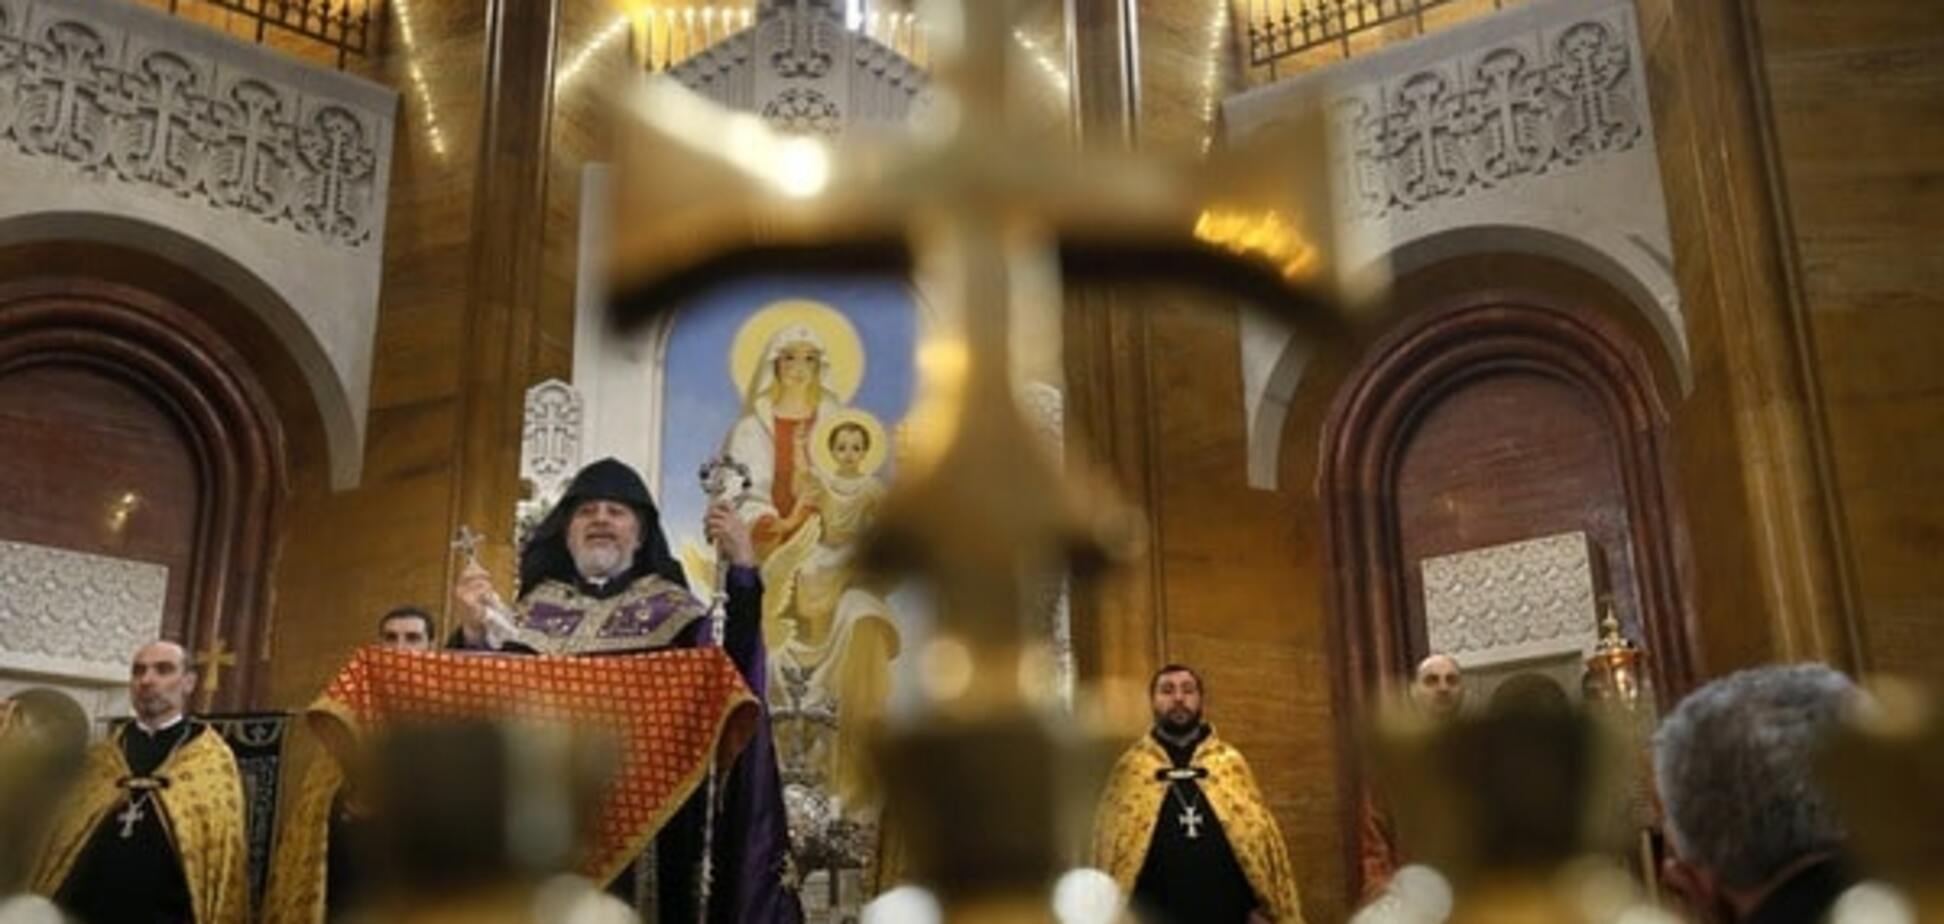 Бог допоміг: у Росії суд пробачив церкві величезні борги 'за молитви'